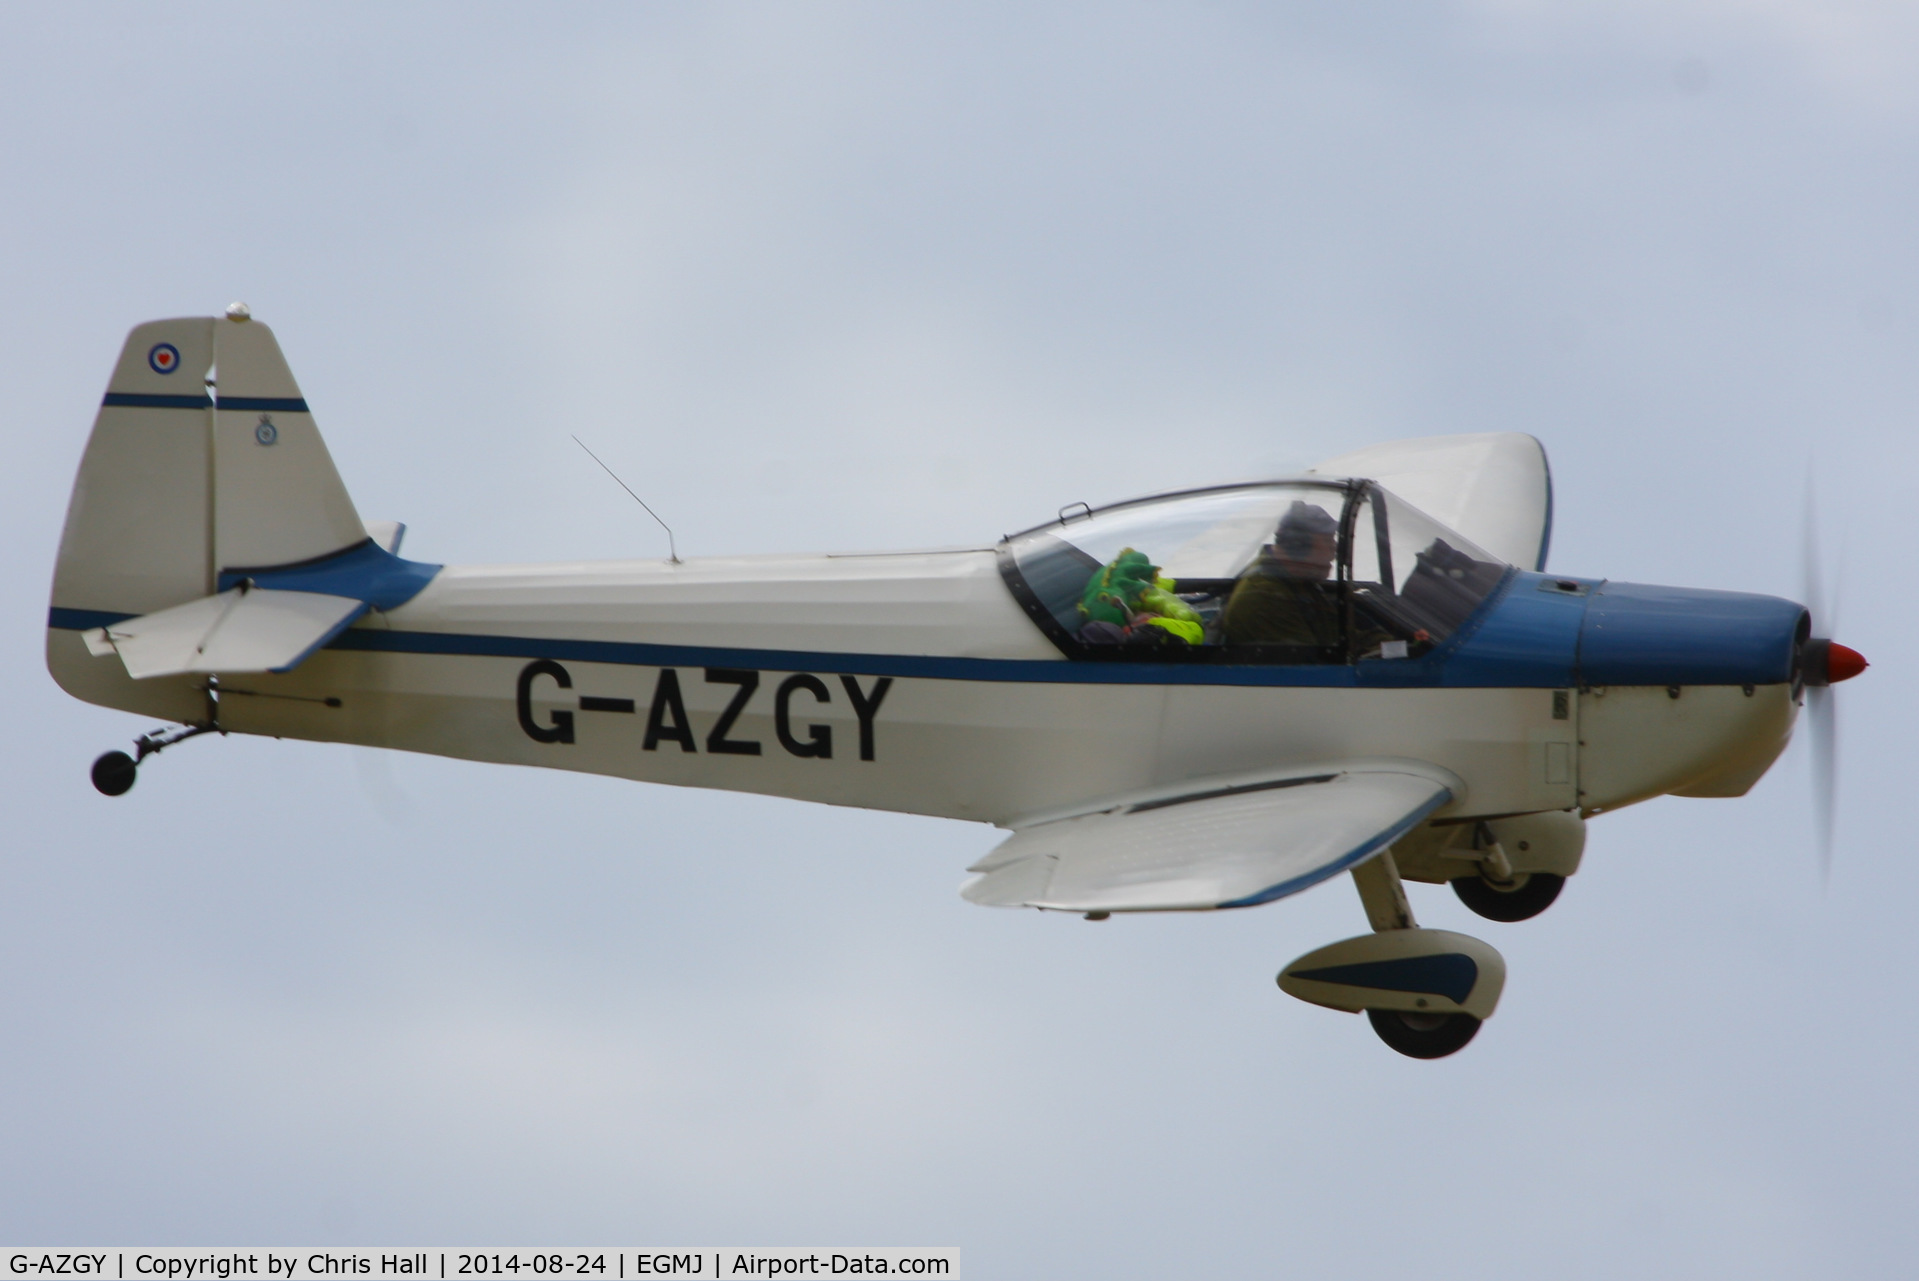 G-AZGY, 1968 Piel CP-301B Emeraude C/N 122, at the Little Gransden Airshow 2014